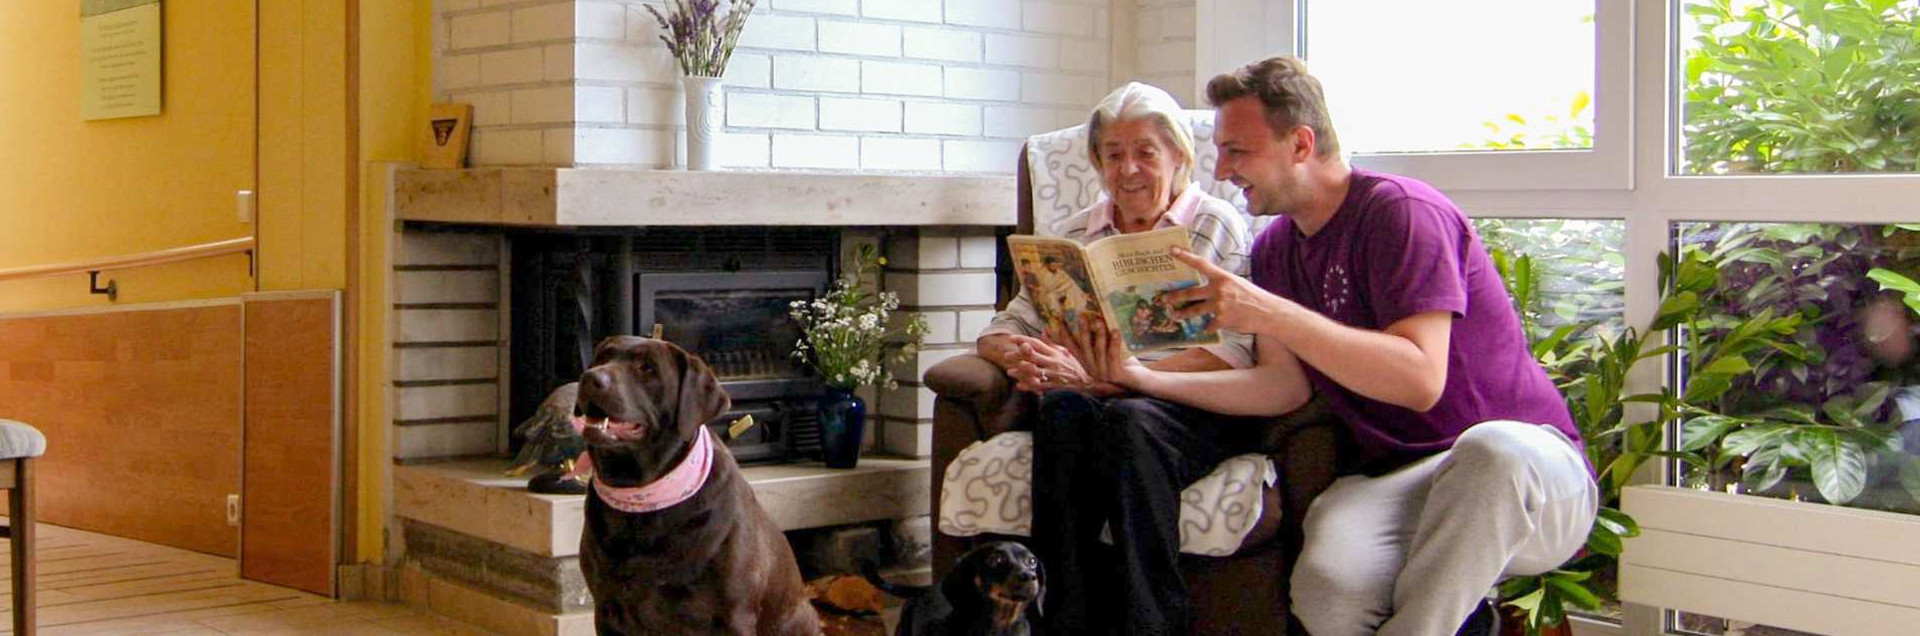 Pflegekraft kümmert sich in einer Wohngemeinschaft / Tagespflege um eine Seniorin